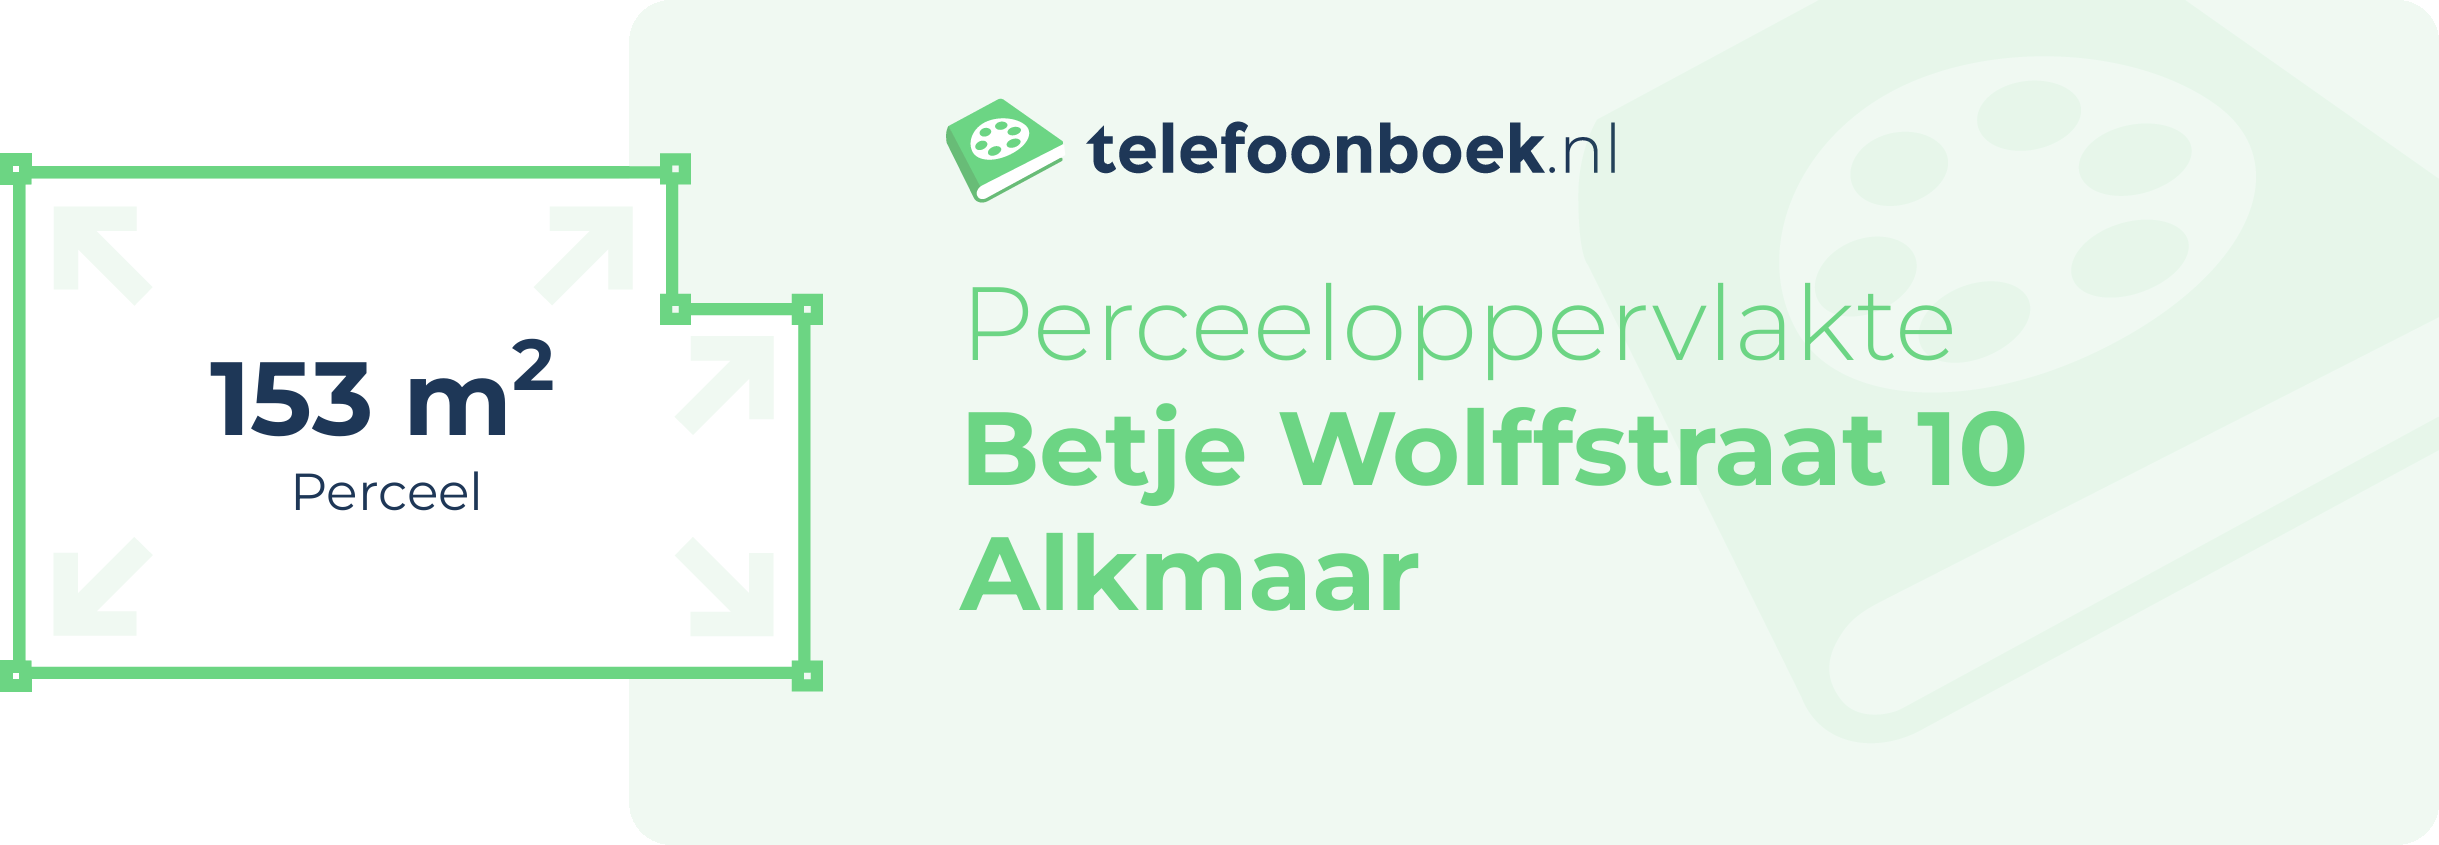 Perceeloppervlakte Betje Wolffstraat 10 Alkmaar